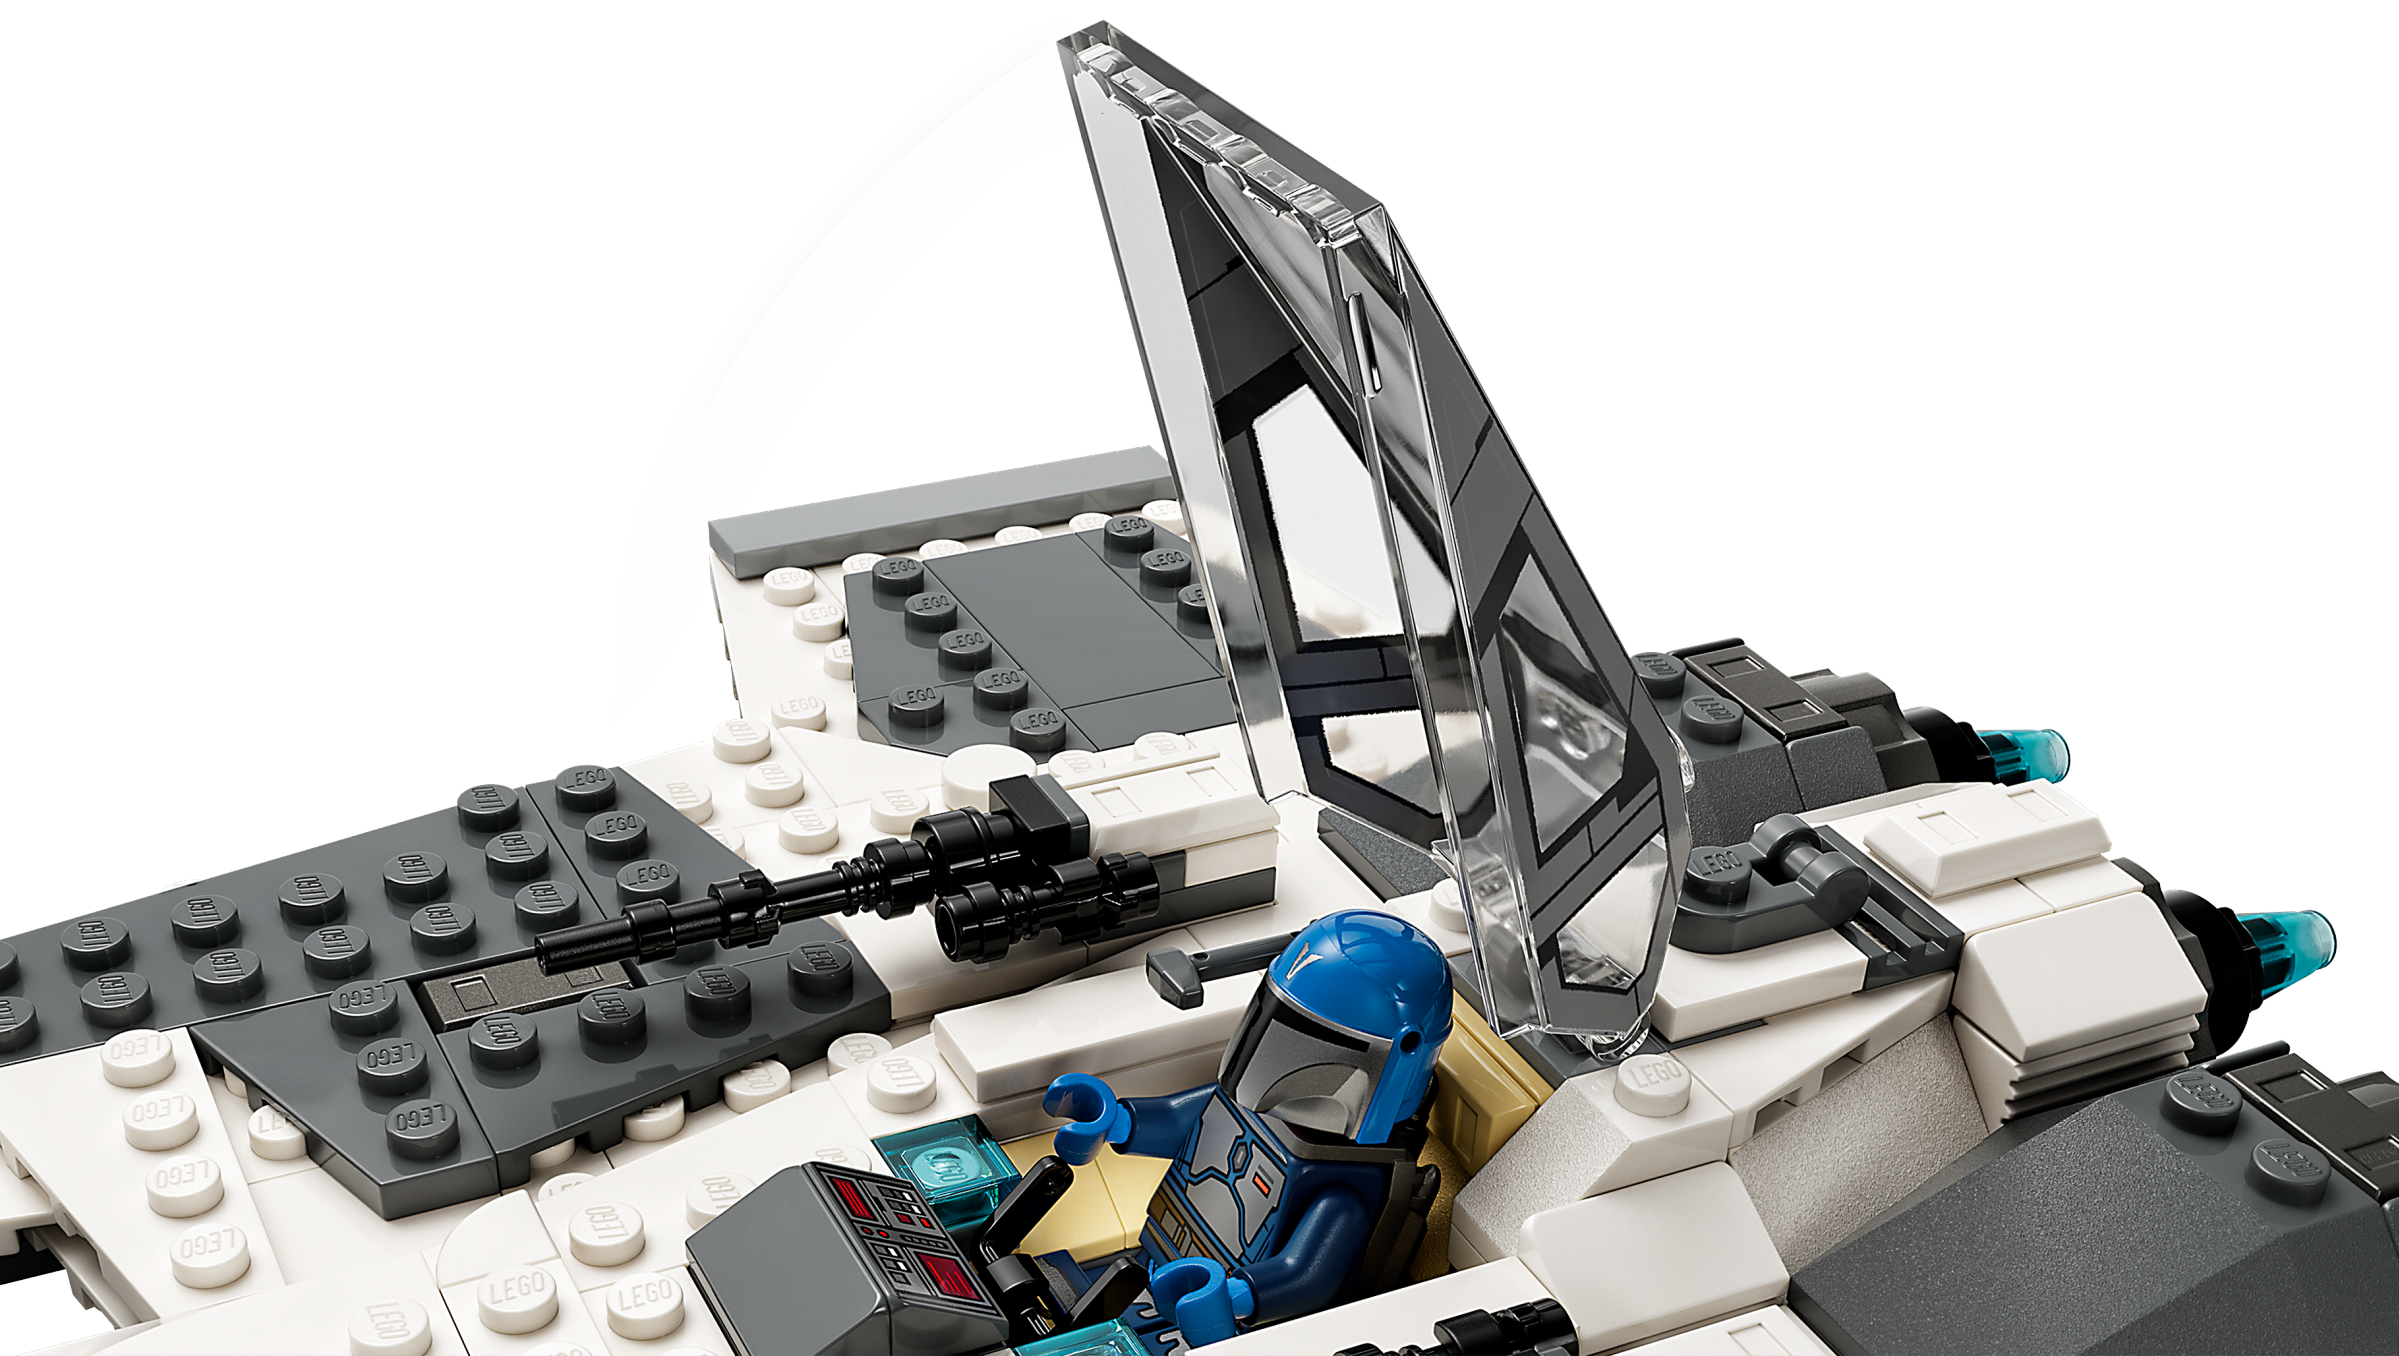 LEGO 75348 Star Wars Le Chasseur Fang Mandalorien Contre le TIE